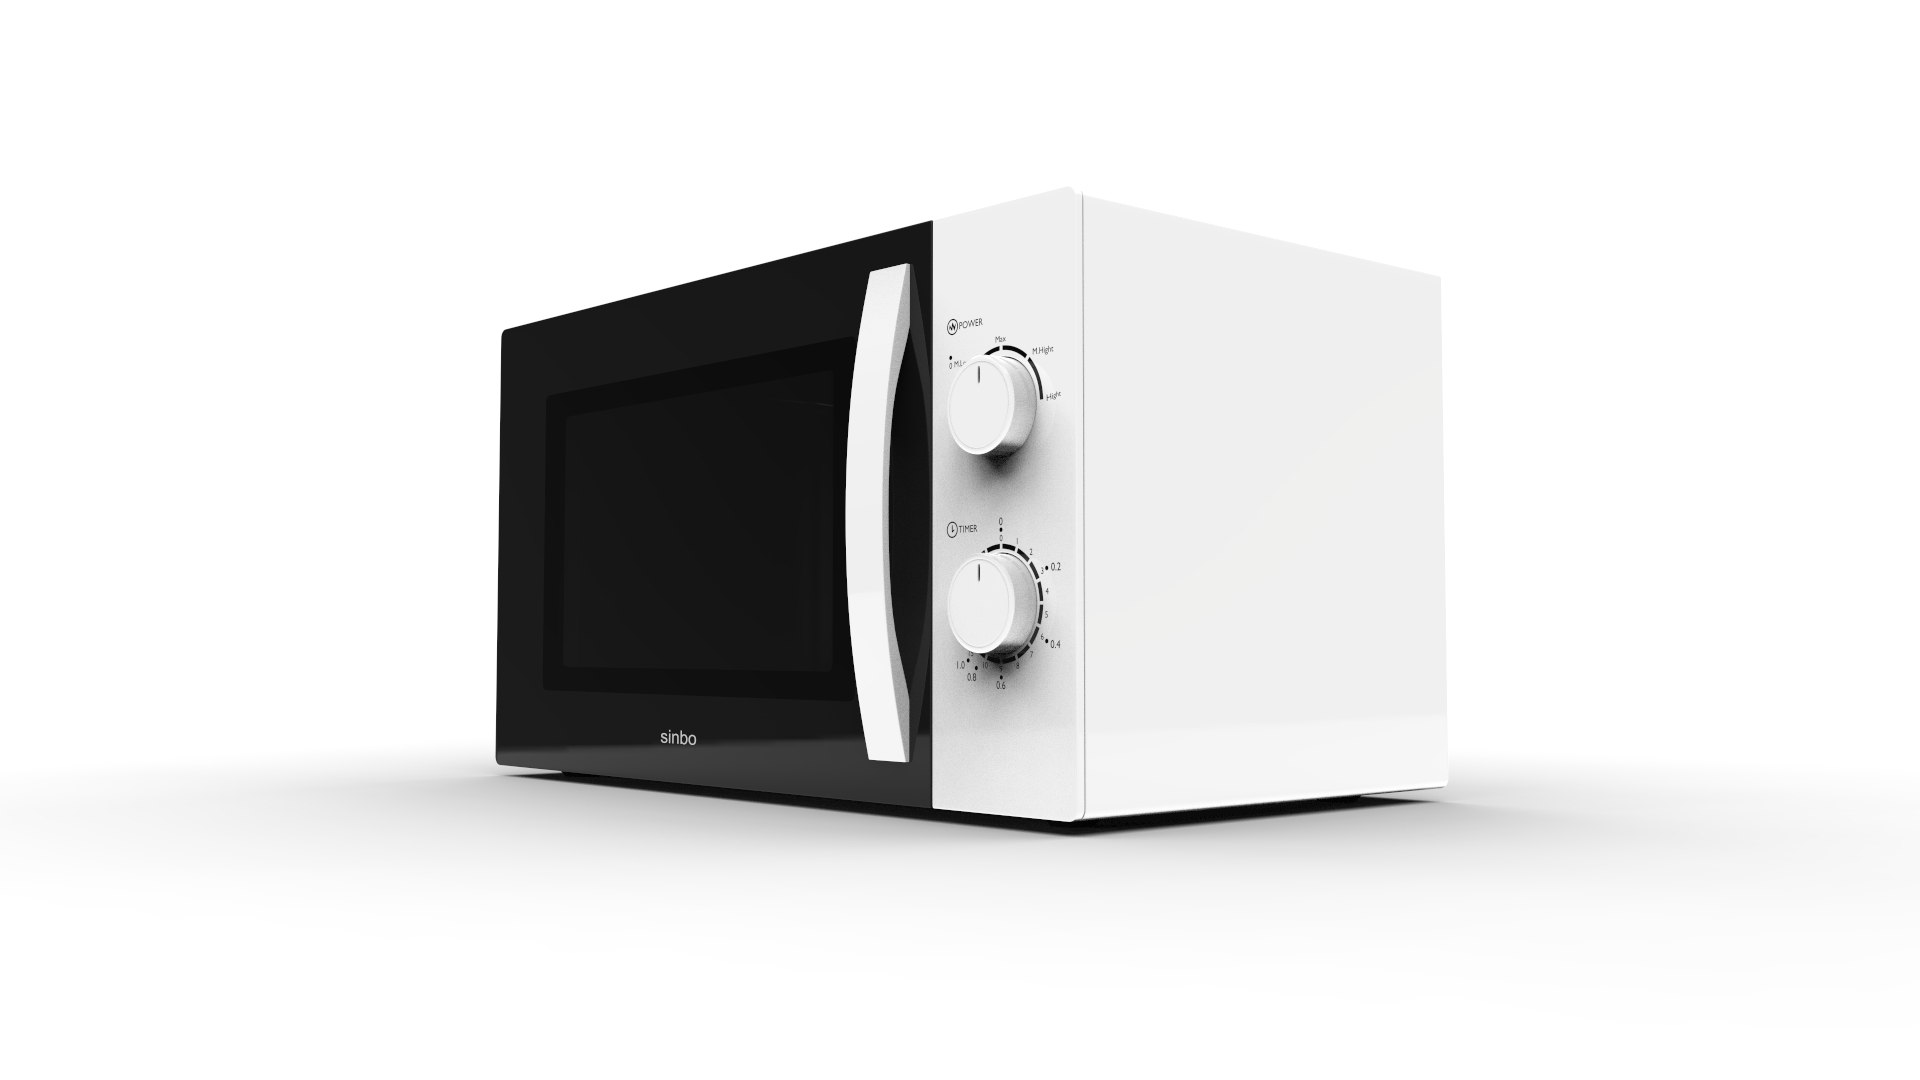 Свч н. Microwave Oven model RG-100. Микроволновая печь 3д модель. Микроволновая печь 3d модель. 3 Д микроволновая печь.